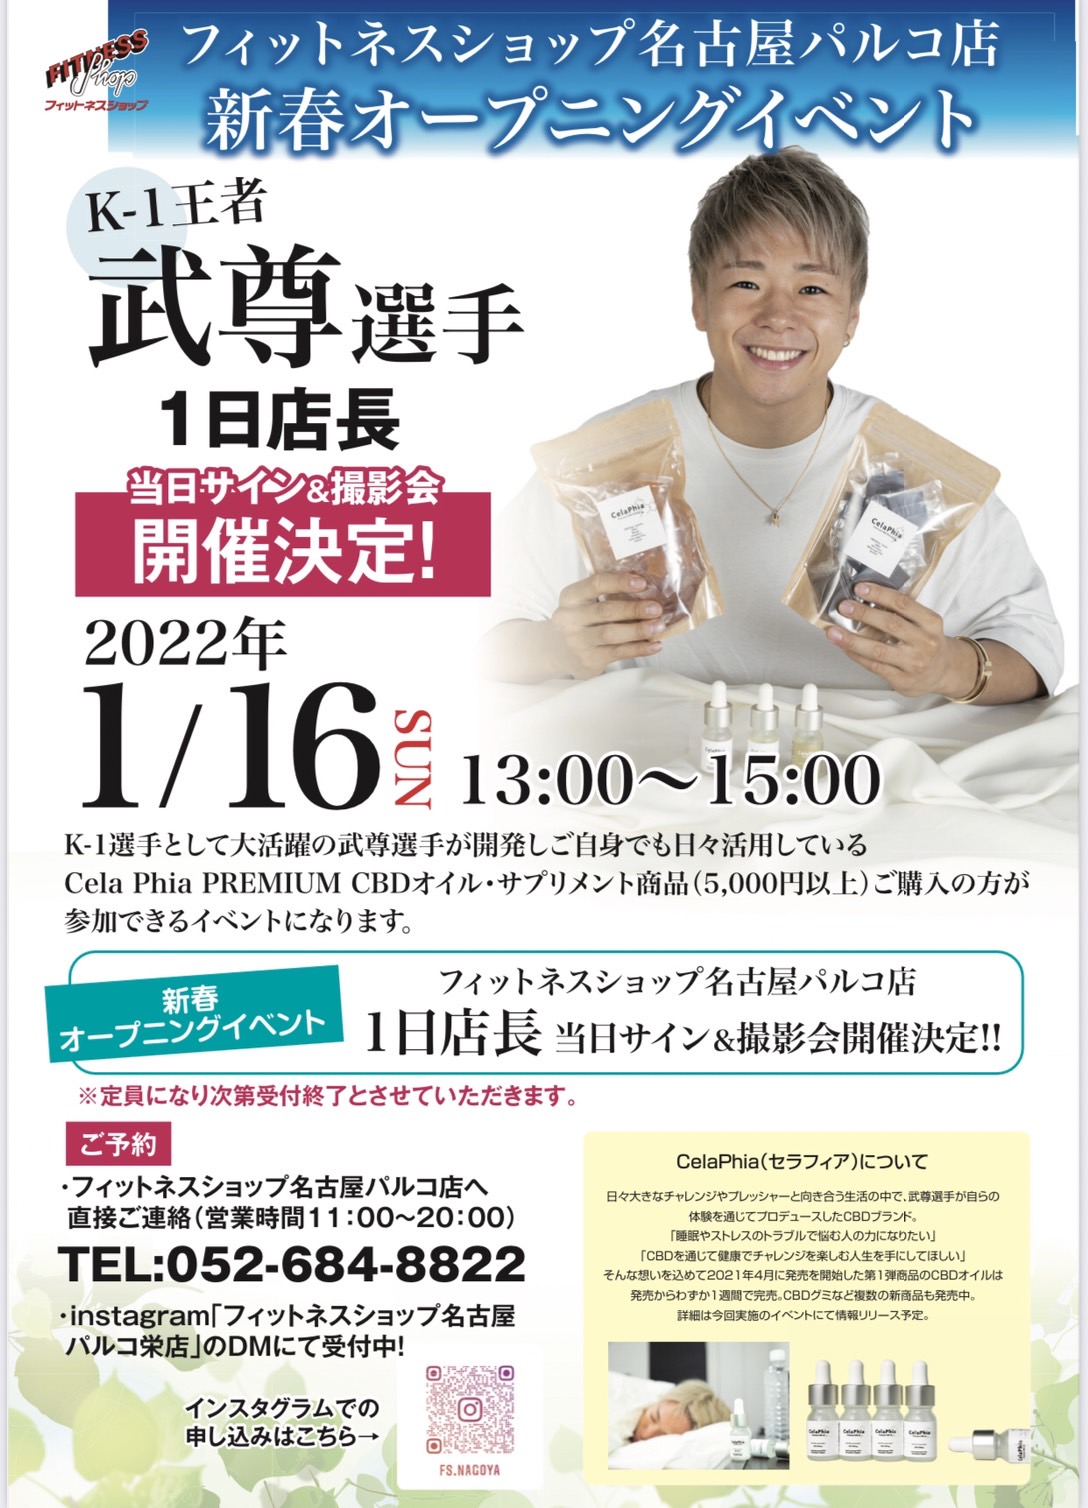 2021年1月16日（日）フィットネスショップ名古屋パルコ店でのイベント開催のお知らせ